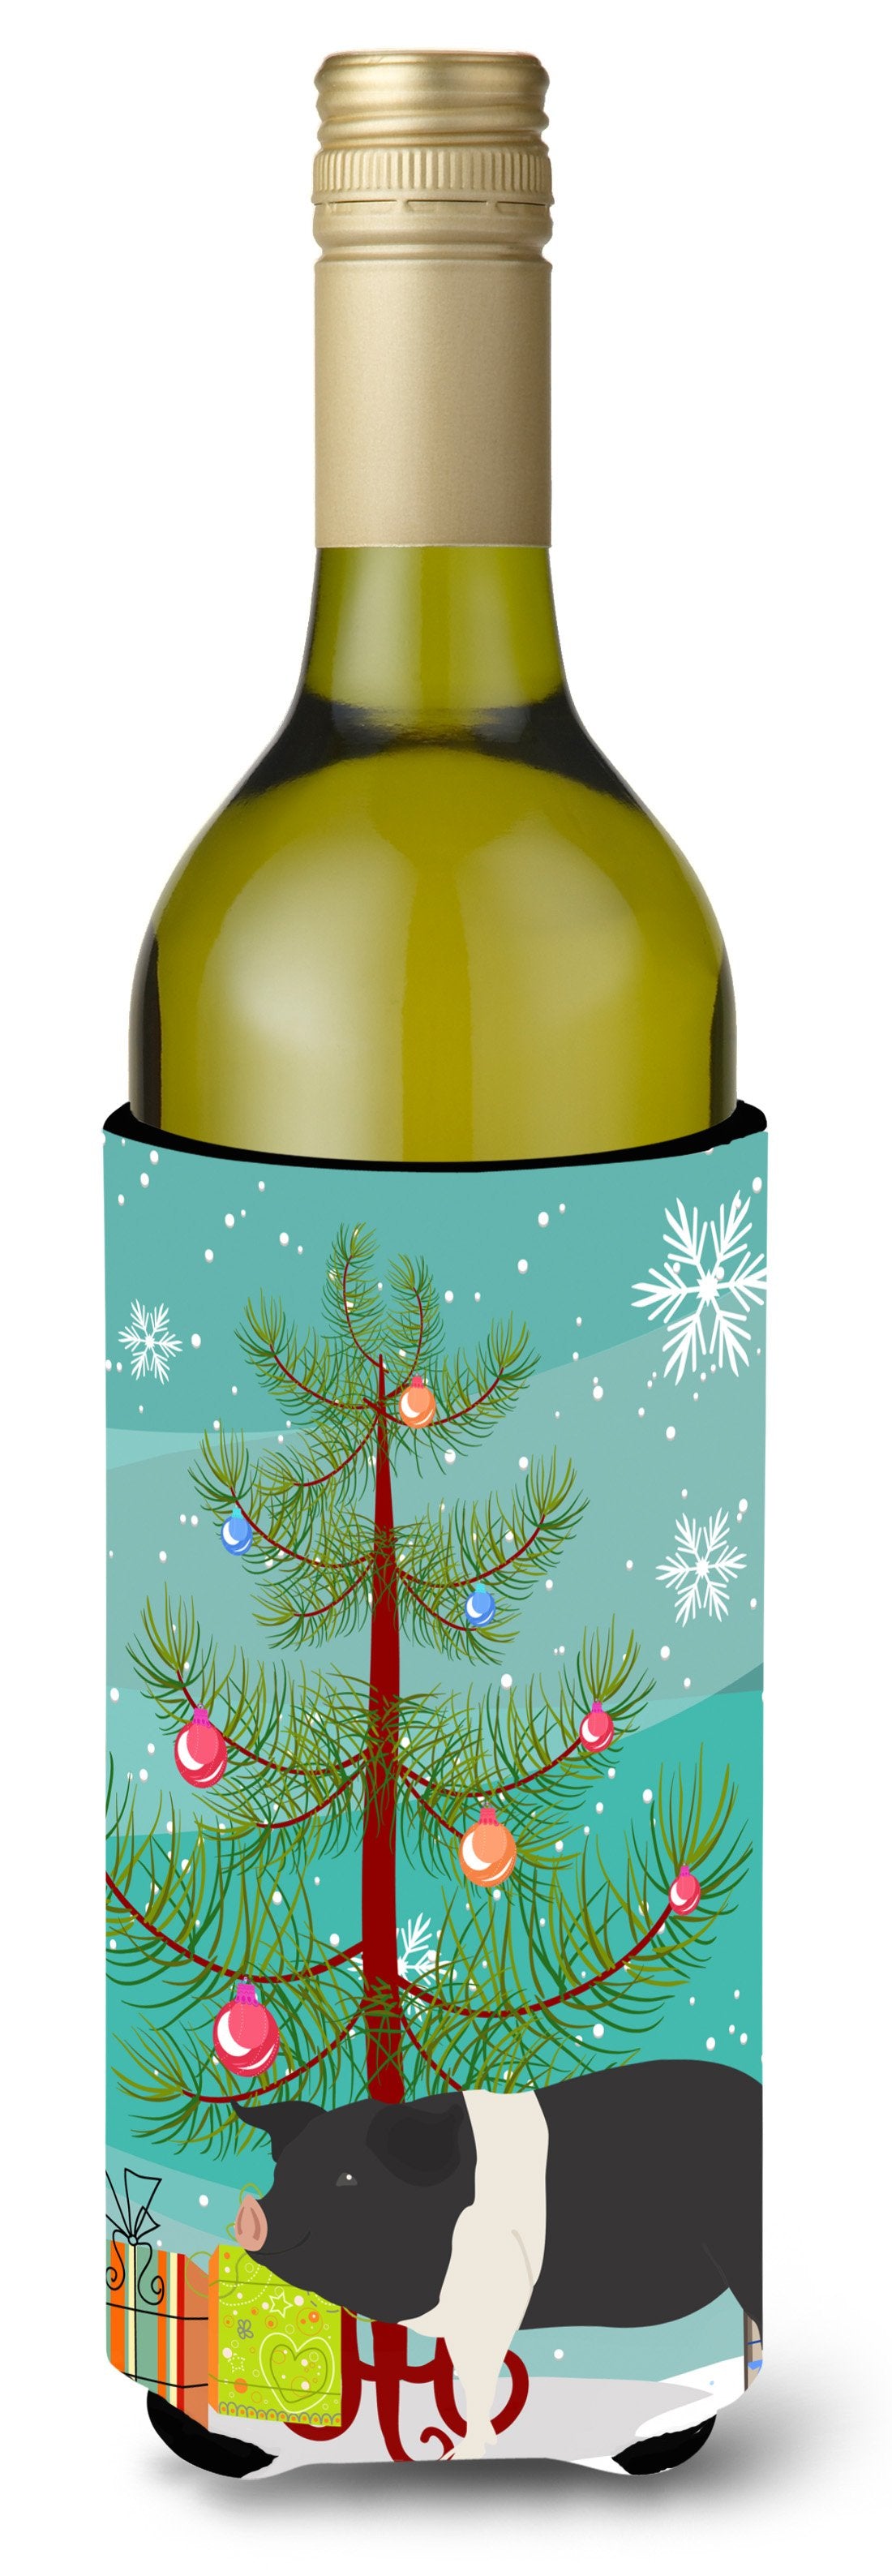 Hampshire Pig Christmas Wine Bottle Beverge Insulator Hugger BB9306LITERK by Caroline&#39;s Treasures